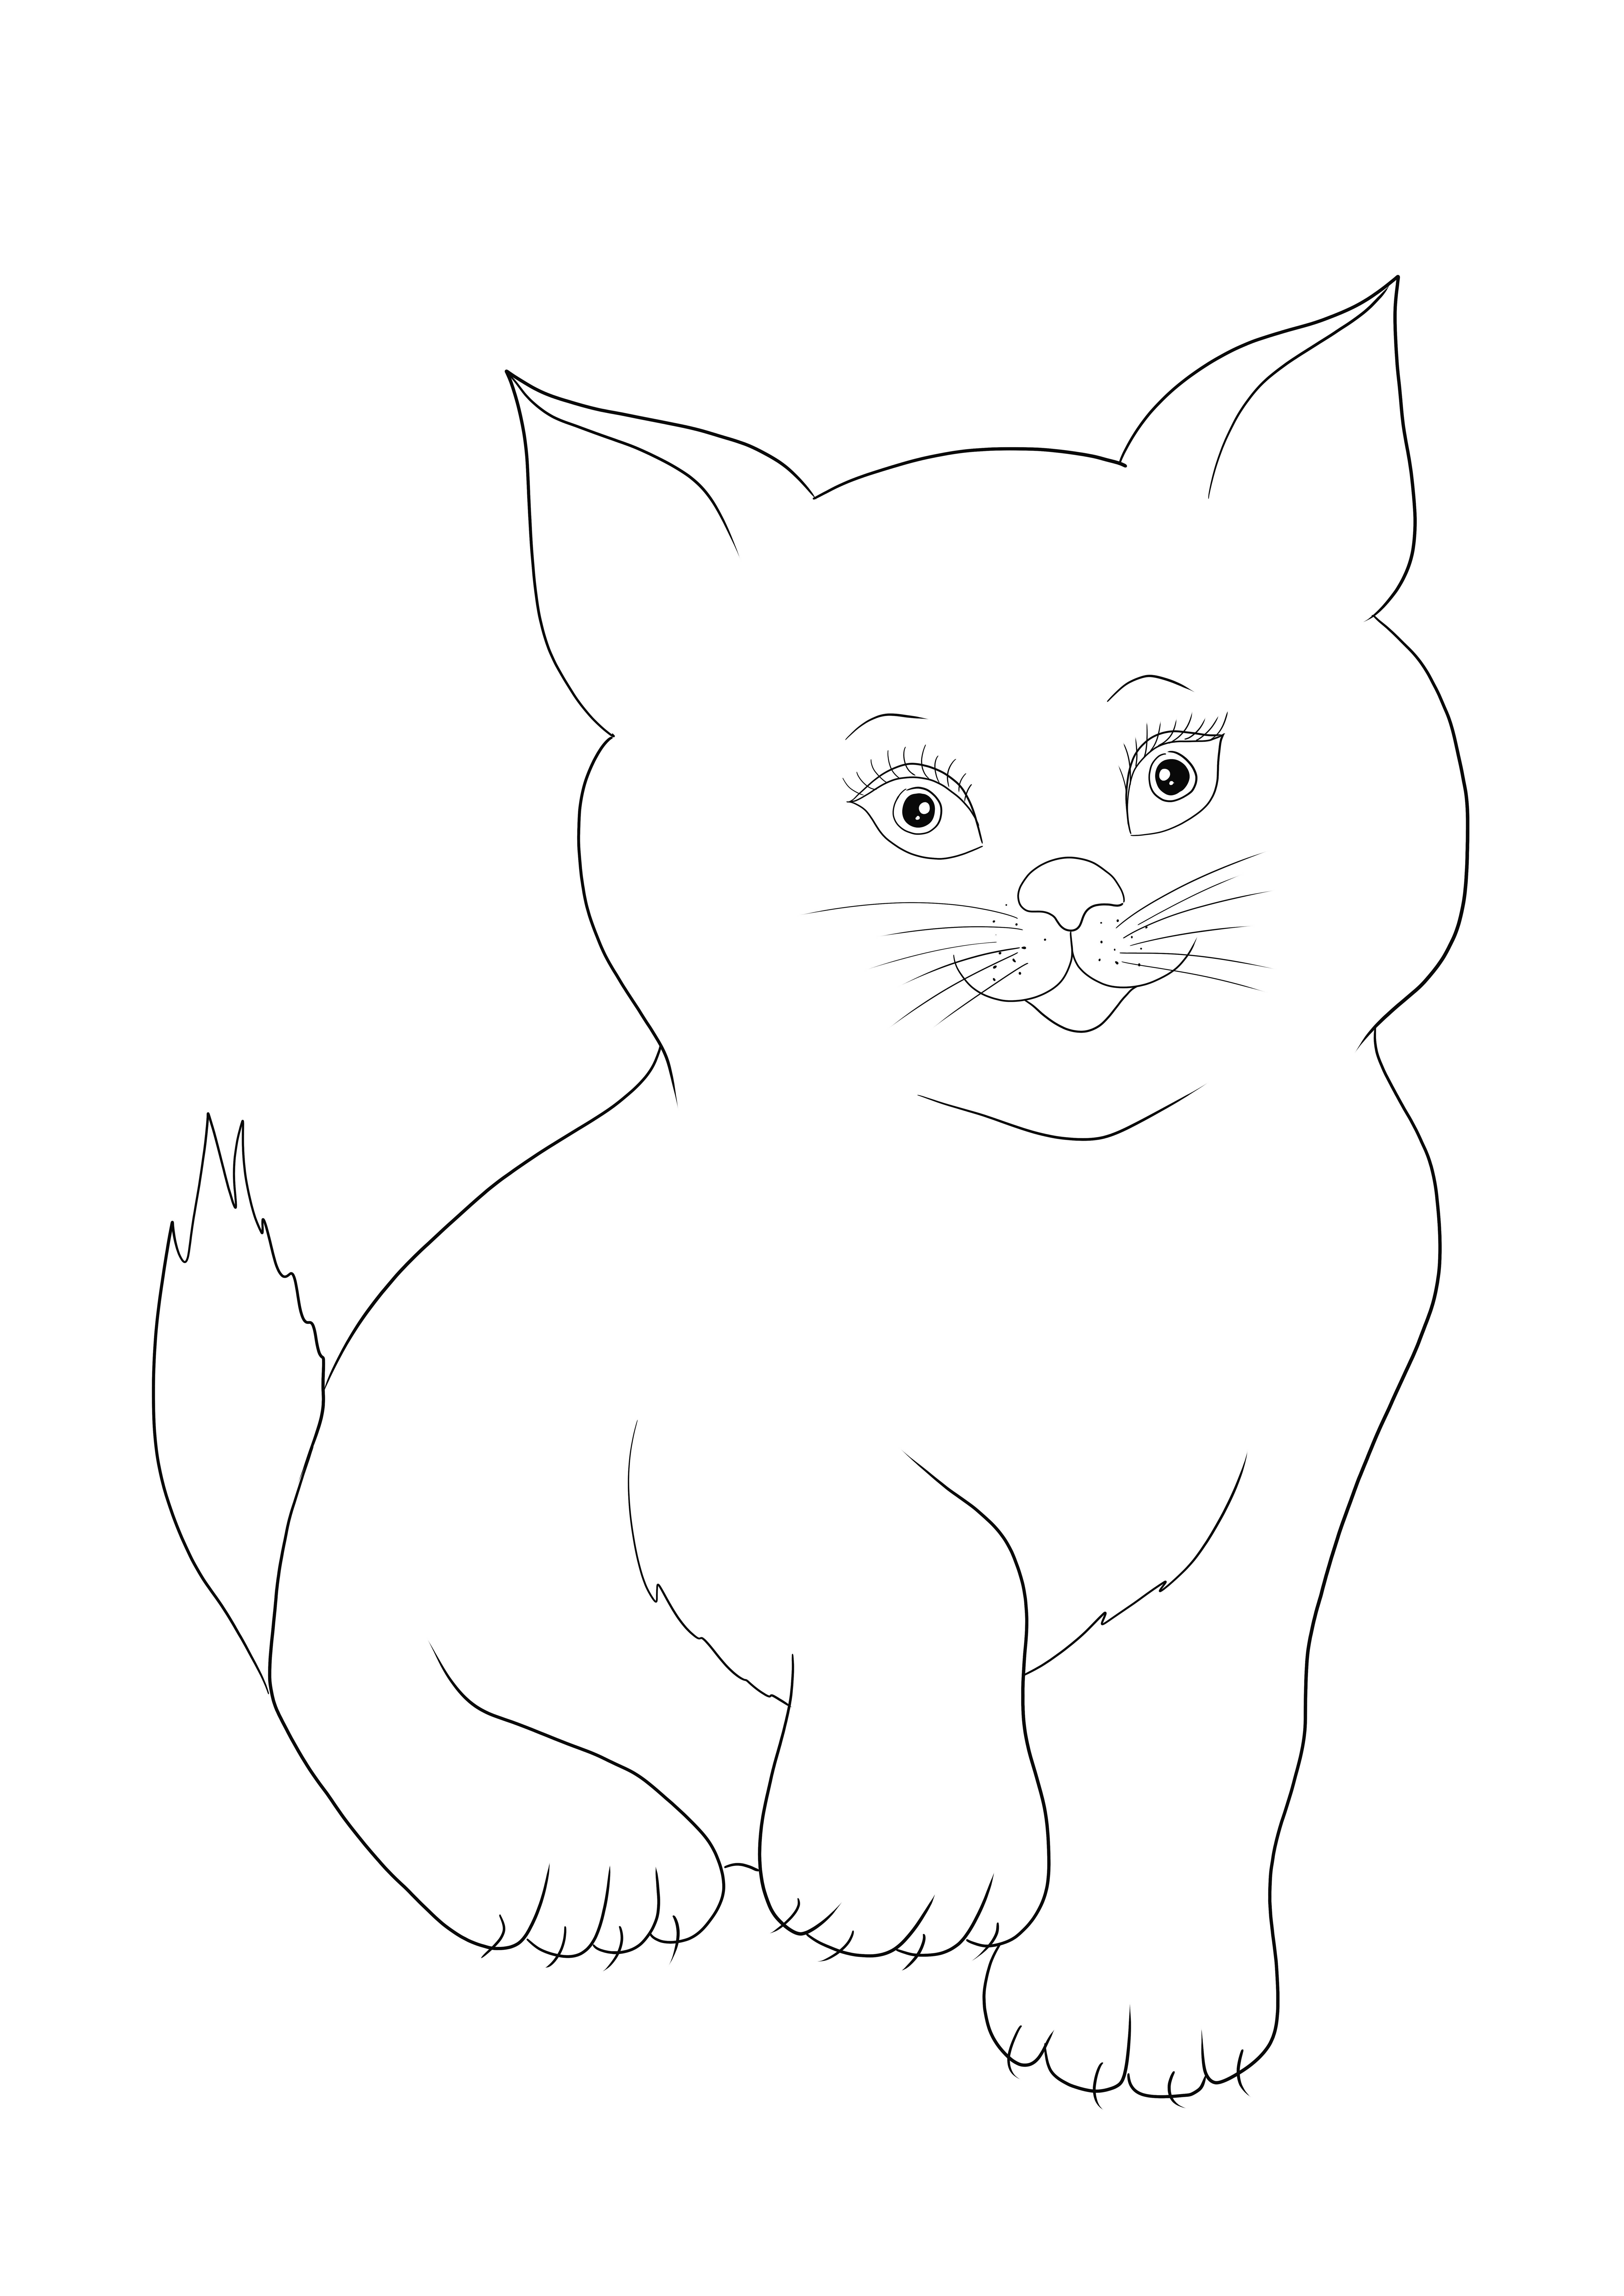 Pequeño y lindo gatito imagen para imprimir o descargar gratis para niños